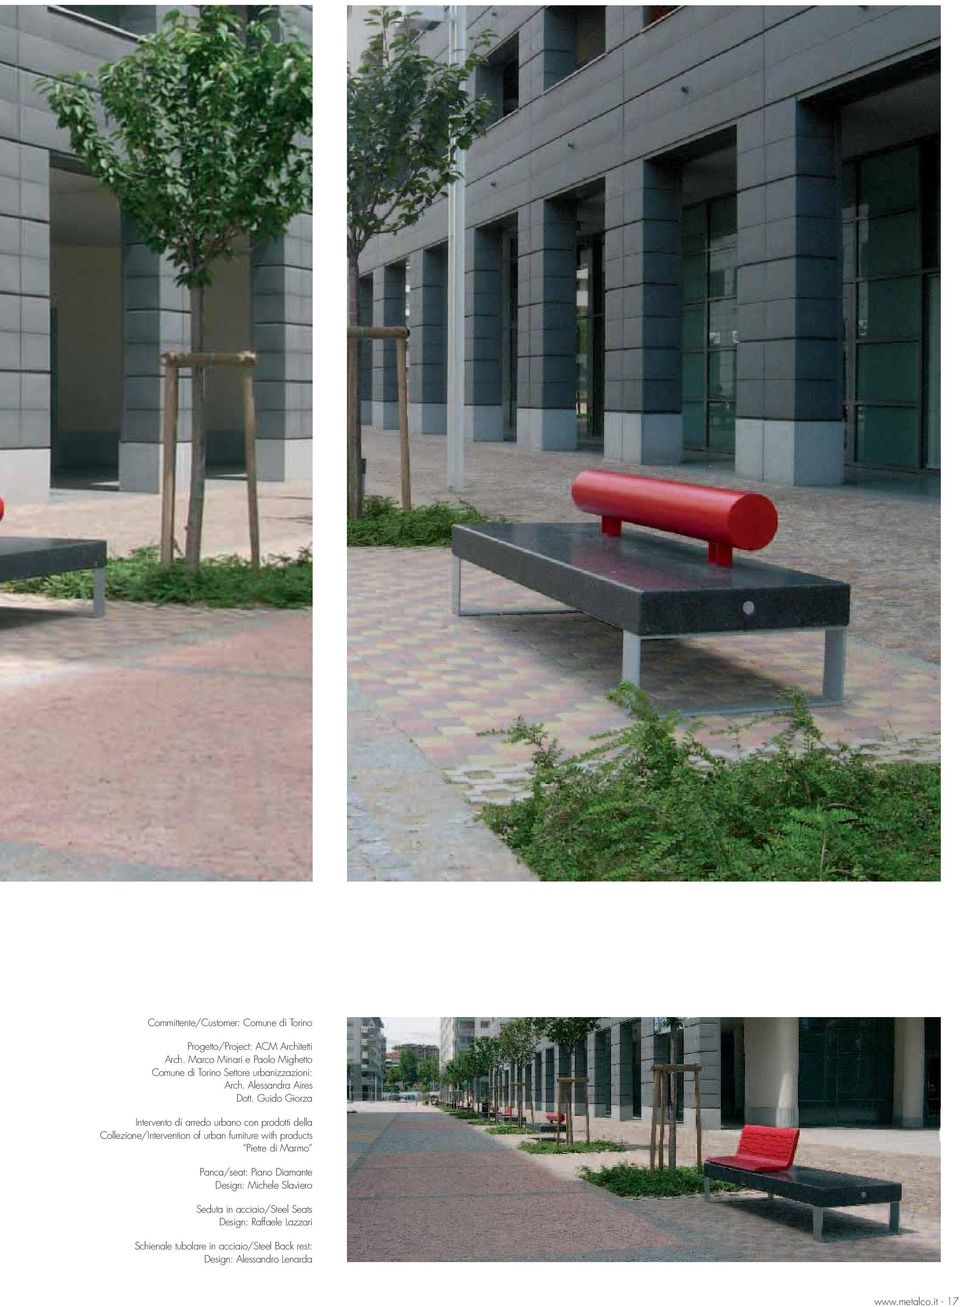 Guido Giorza Intervento di arredo urbano con prodotti della Collezione/Intervention of urban furniture with products Pietre di